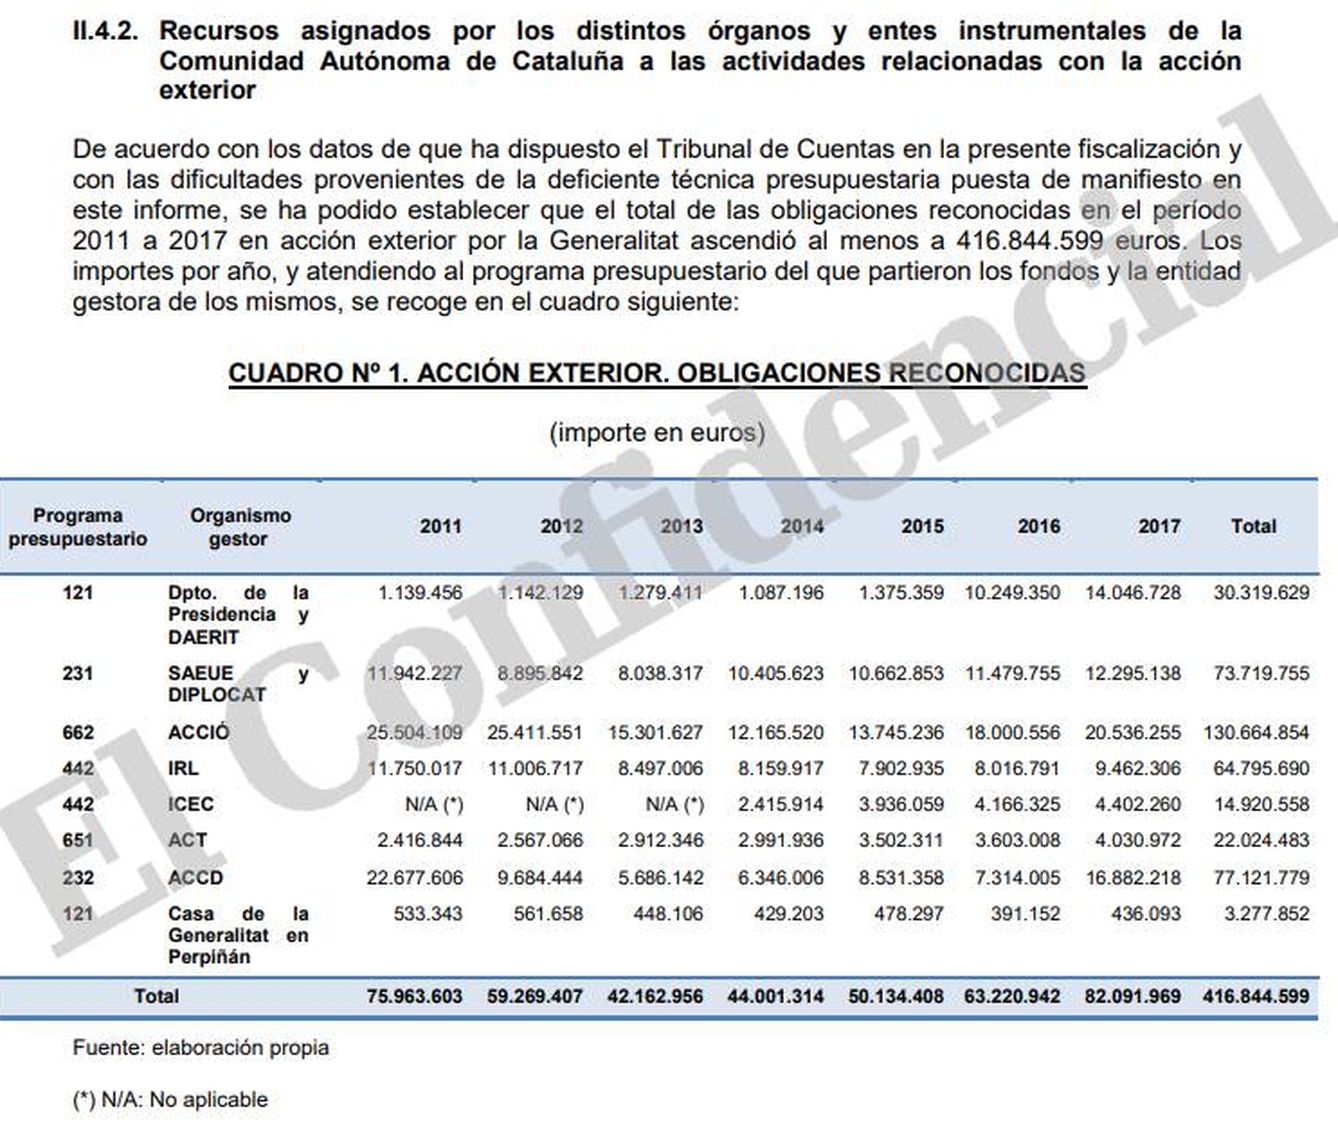 Cuadro de gastos del Diplocat (2011-2017), según un informe del Tribunal de Cuentas.